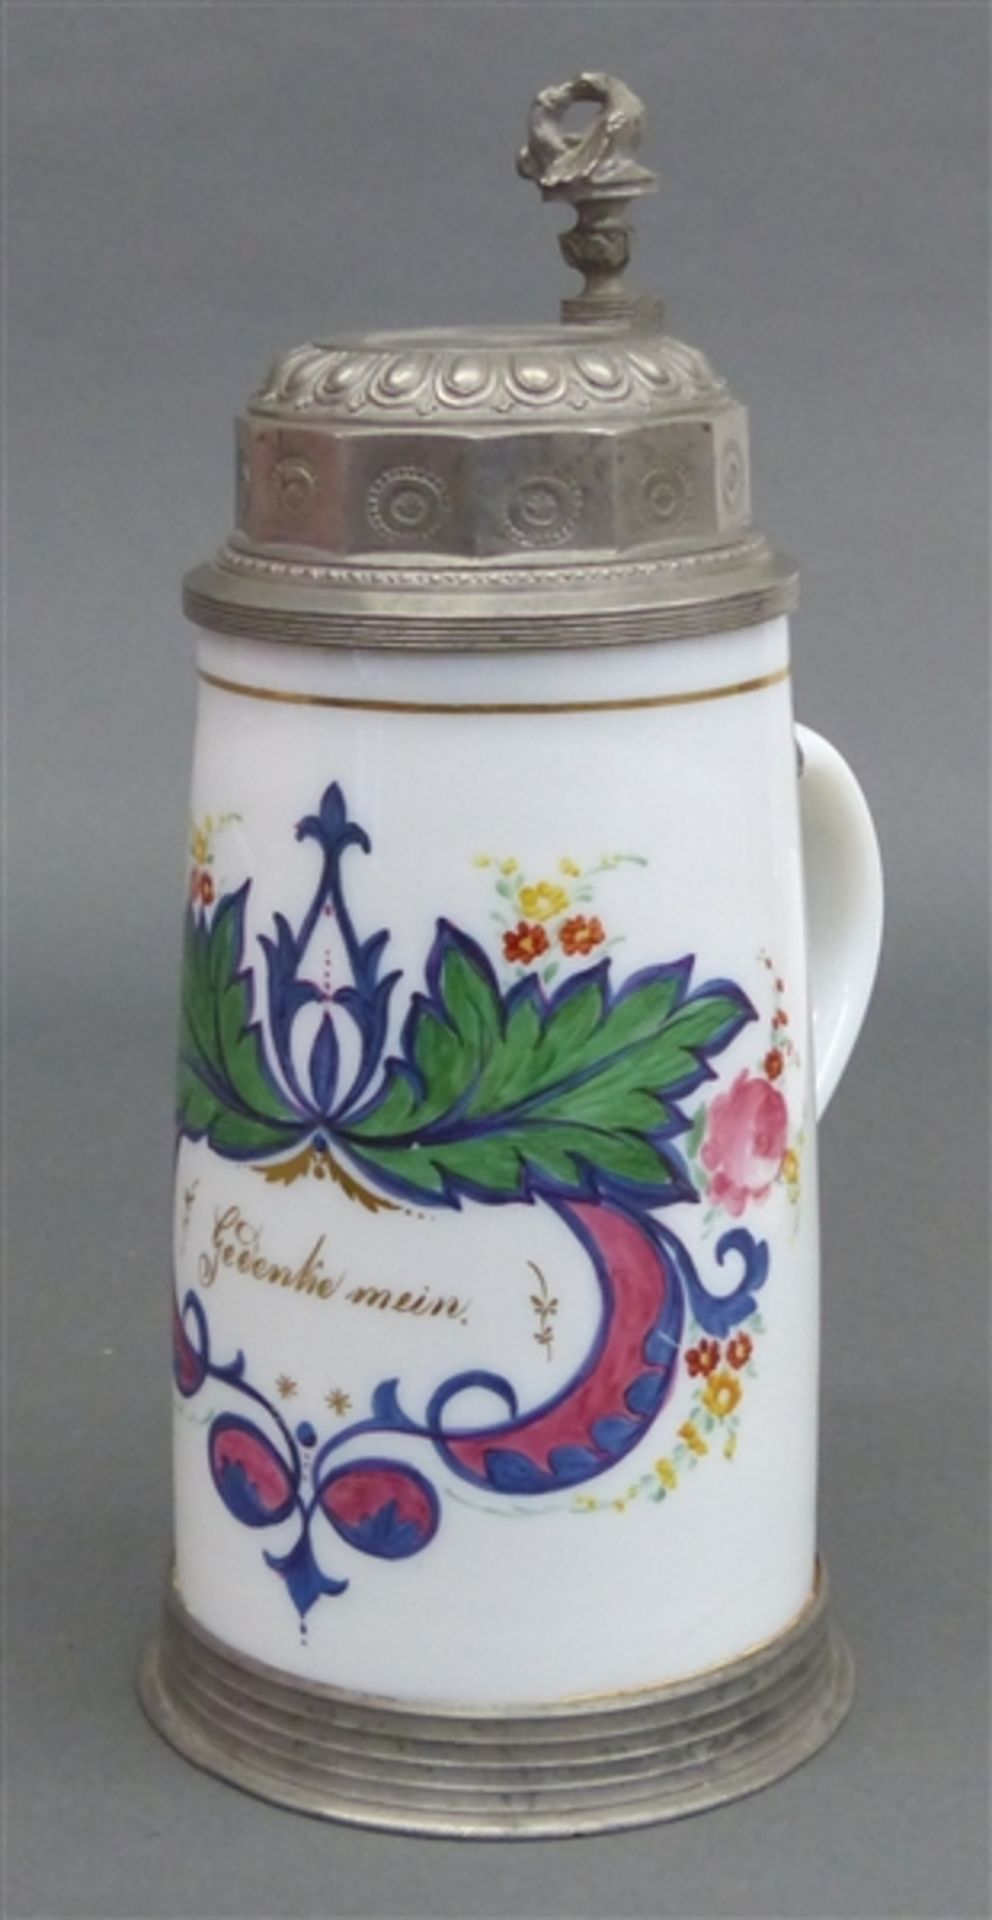 Milchglasbierkrug weißes Milchglas, florale Medaillonbemalung, Sinnspruch "Gedenke mein",